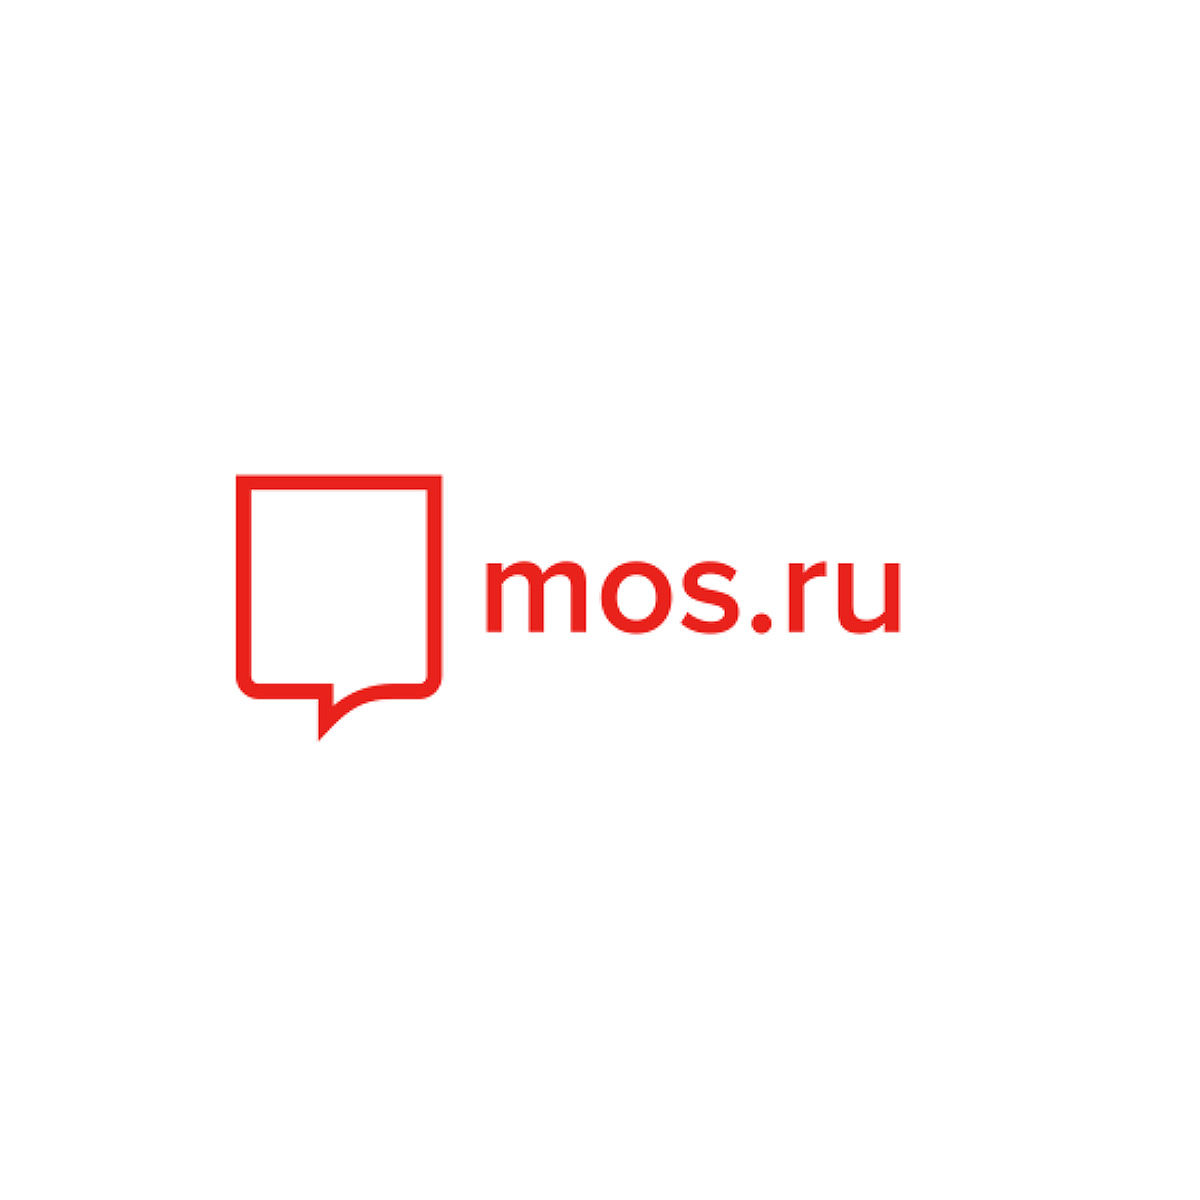 Значок мос ру. Мос ру. Mos.ru лого. Мос ру картинки. Мос ру эмблема.